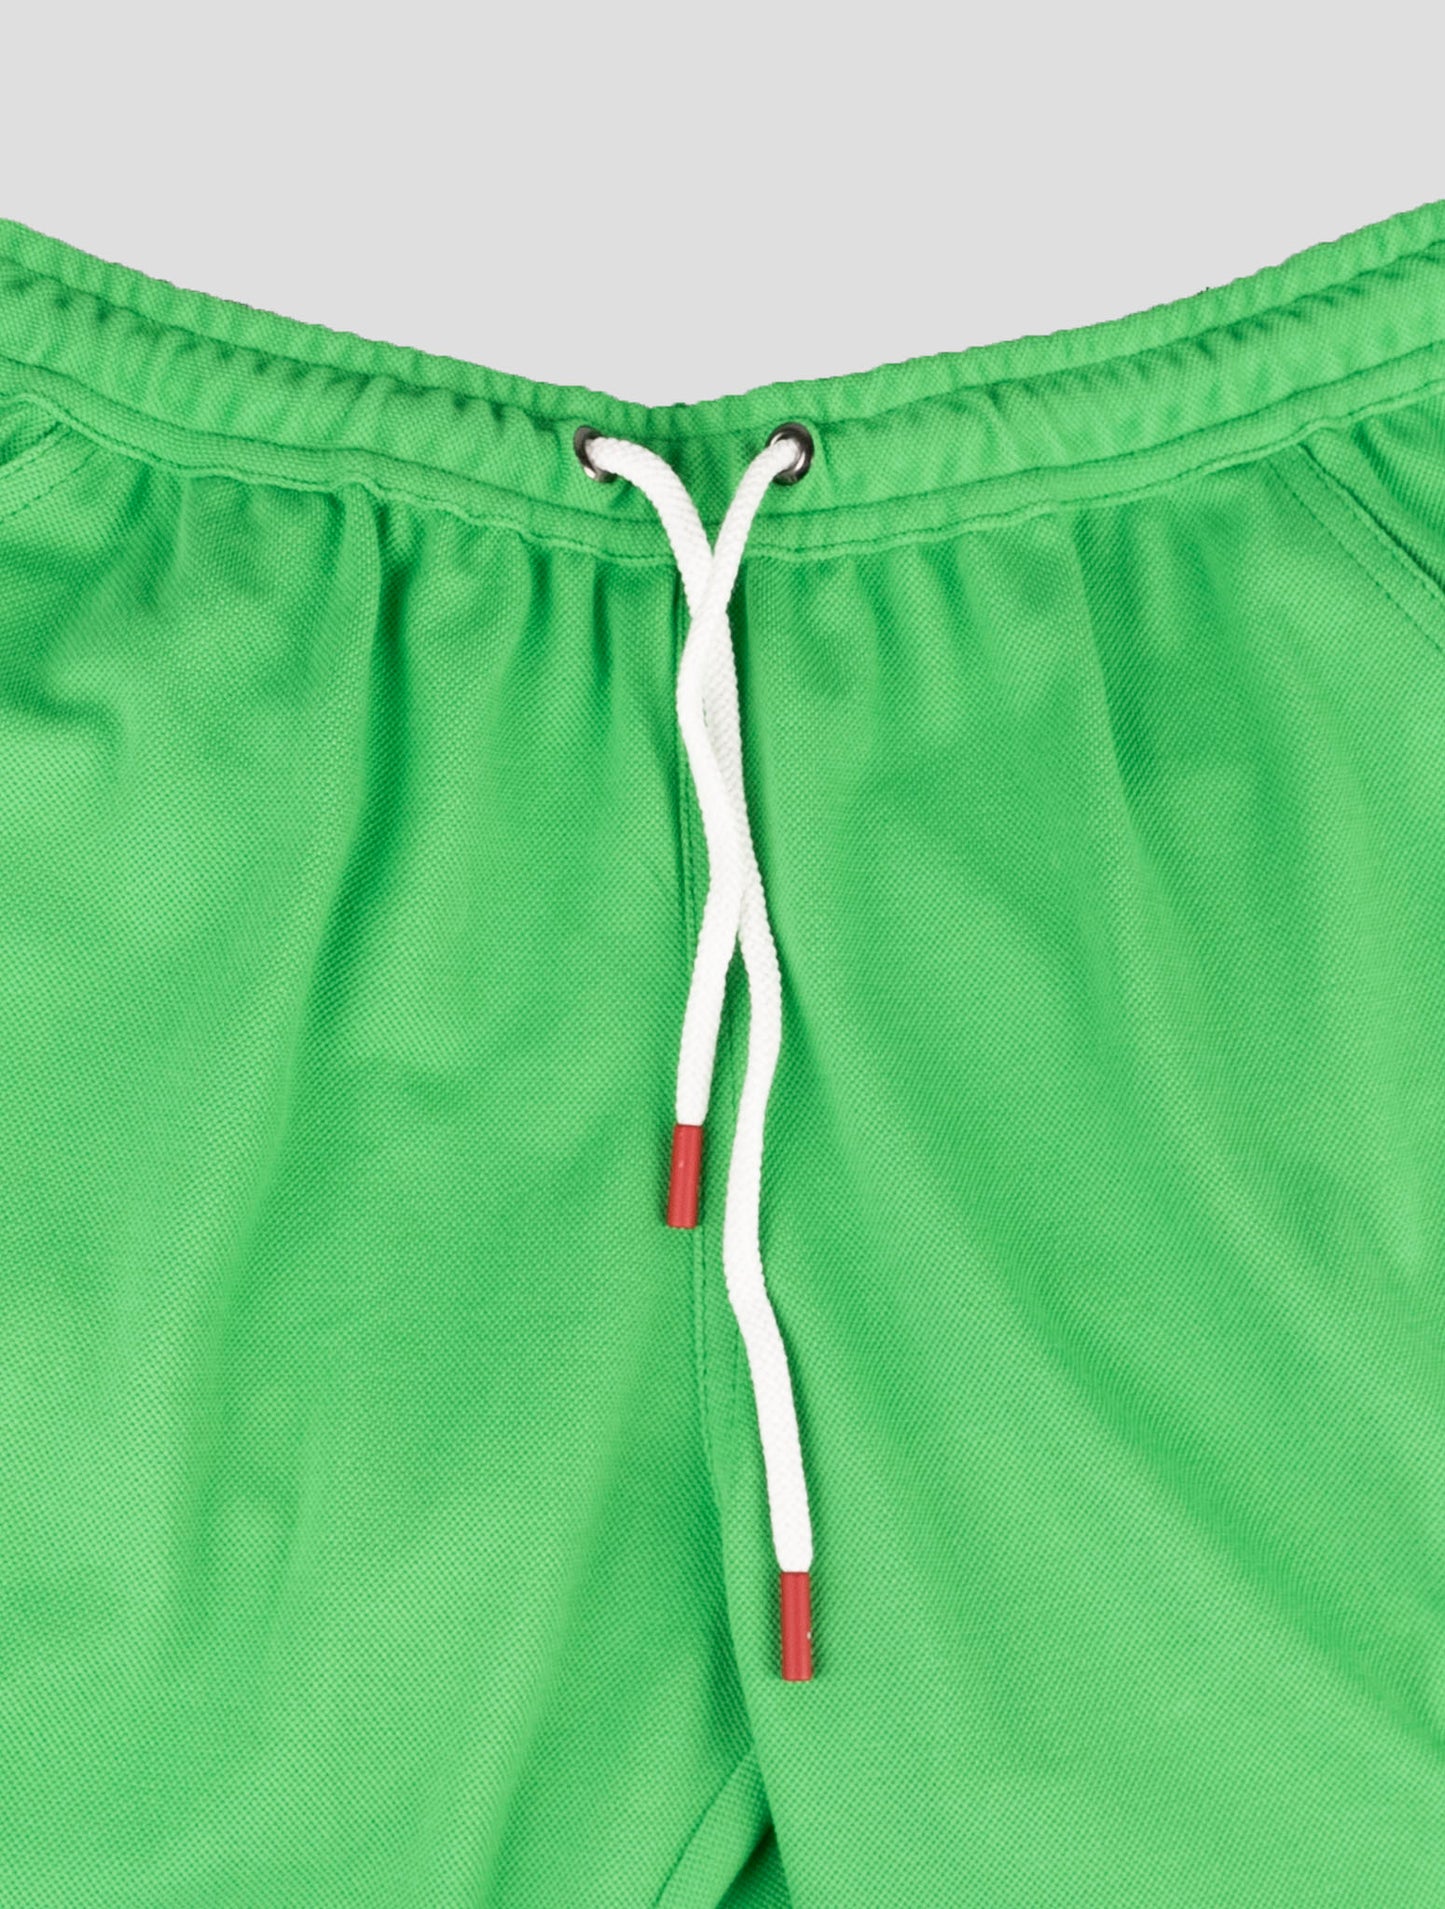 بدلة رياضية مع سروال قصير أخضر وماريانو أزرق متناسقة